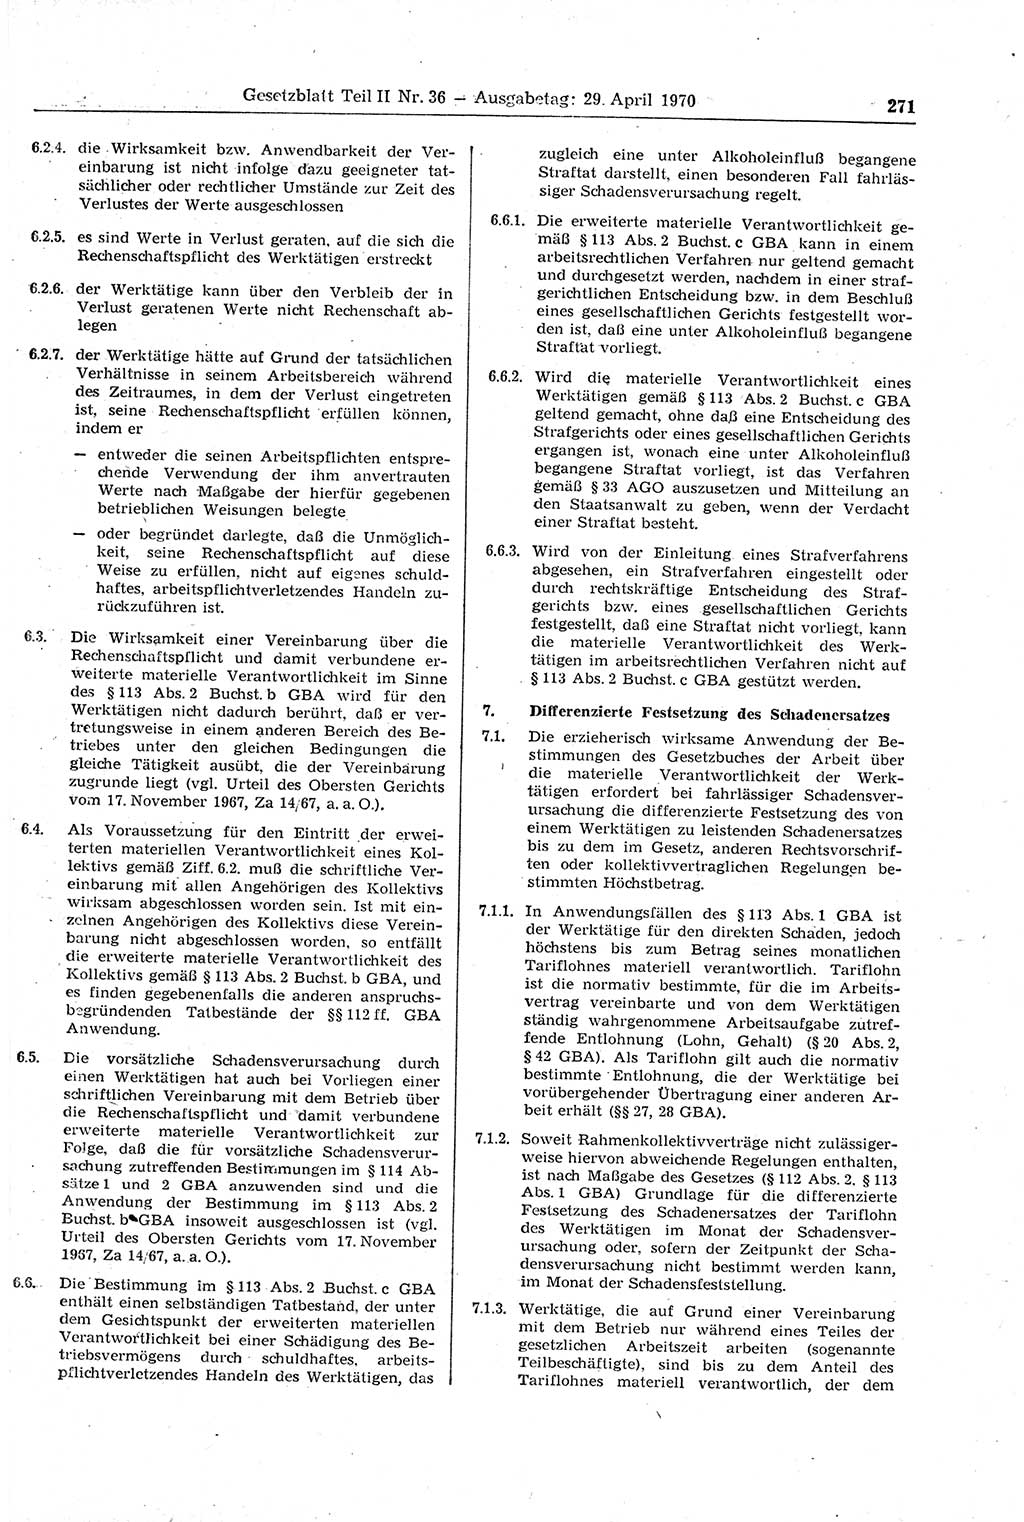 Gesetzblatt (GBl.) der Deutschen Demokratischen Republik (DDR) Teil ⅠⅠ 1970, Seite 271 (GBl. DDR ⅠⅠ 1970, S. 271)